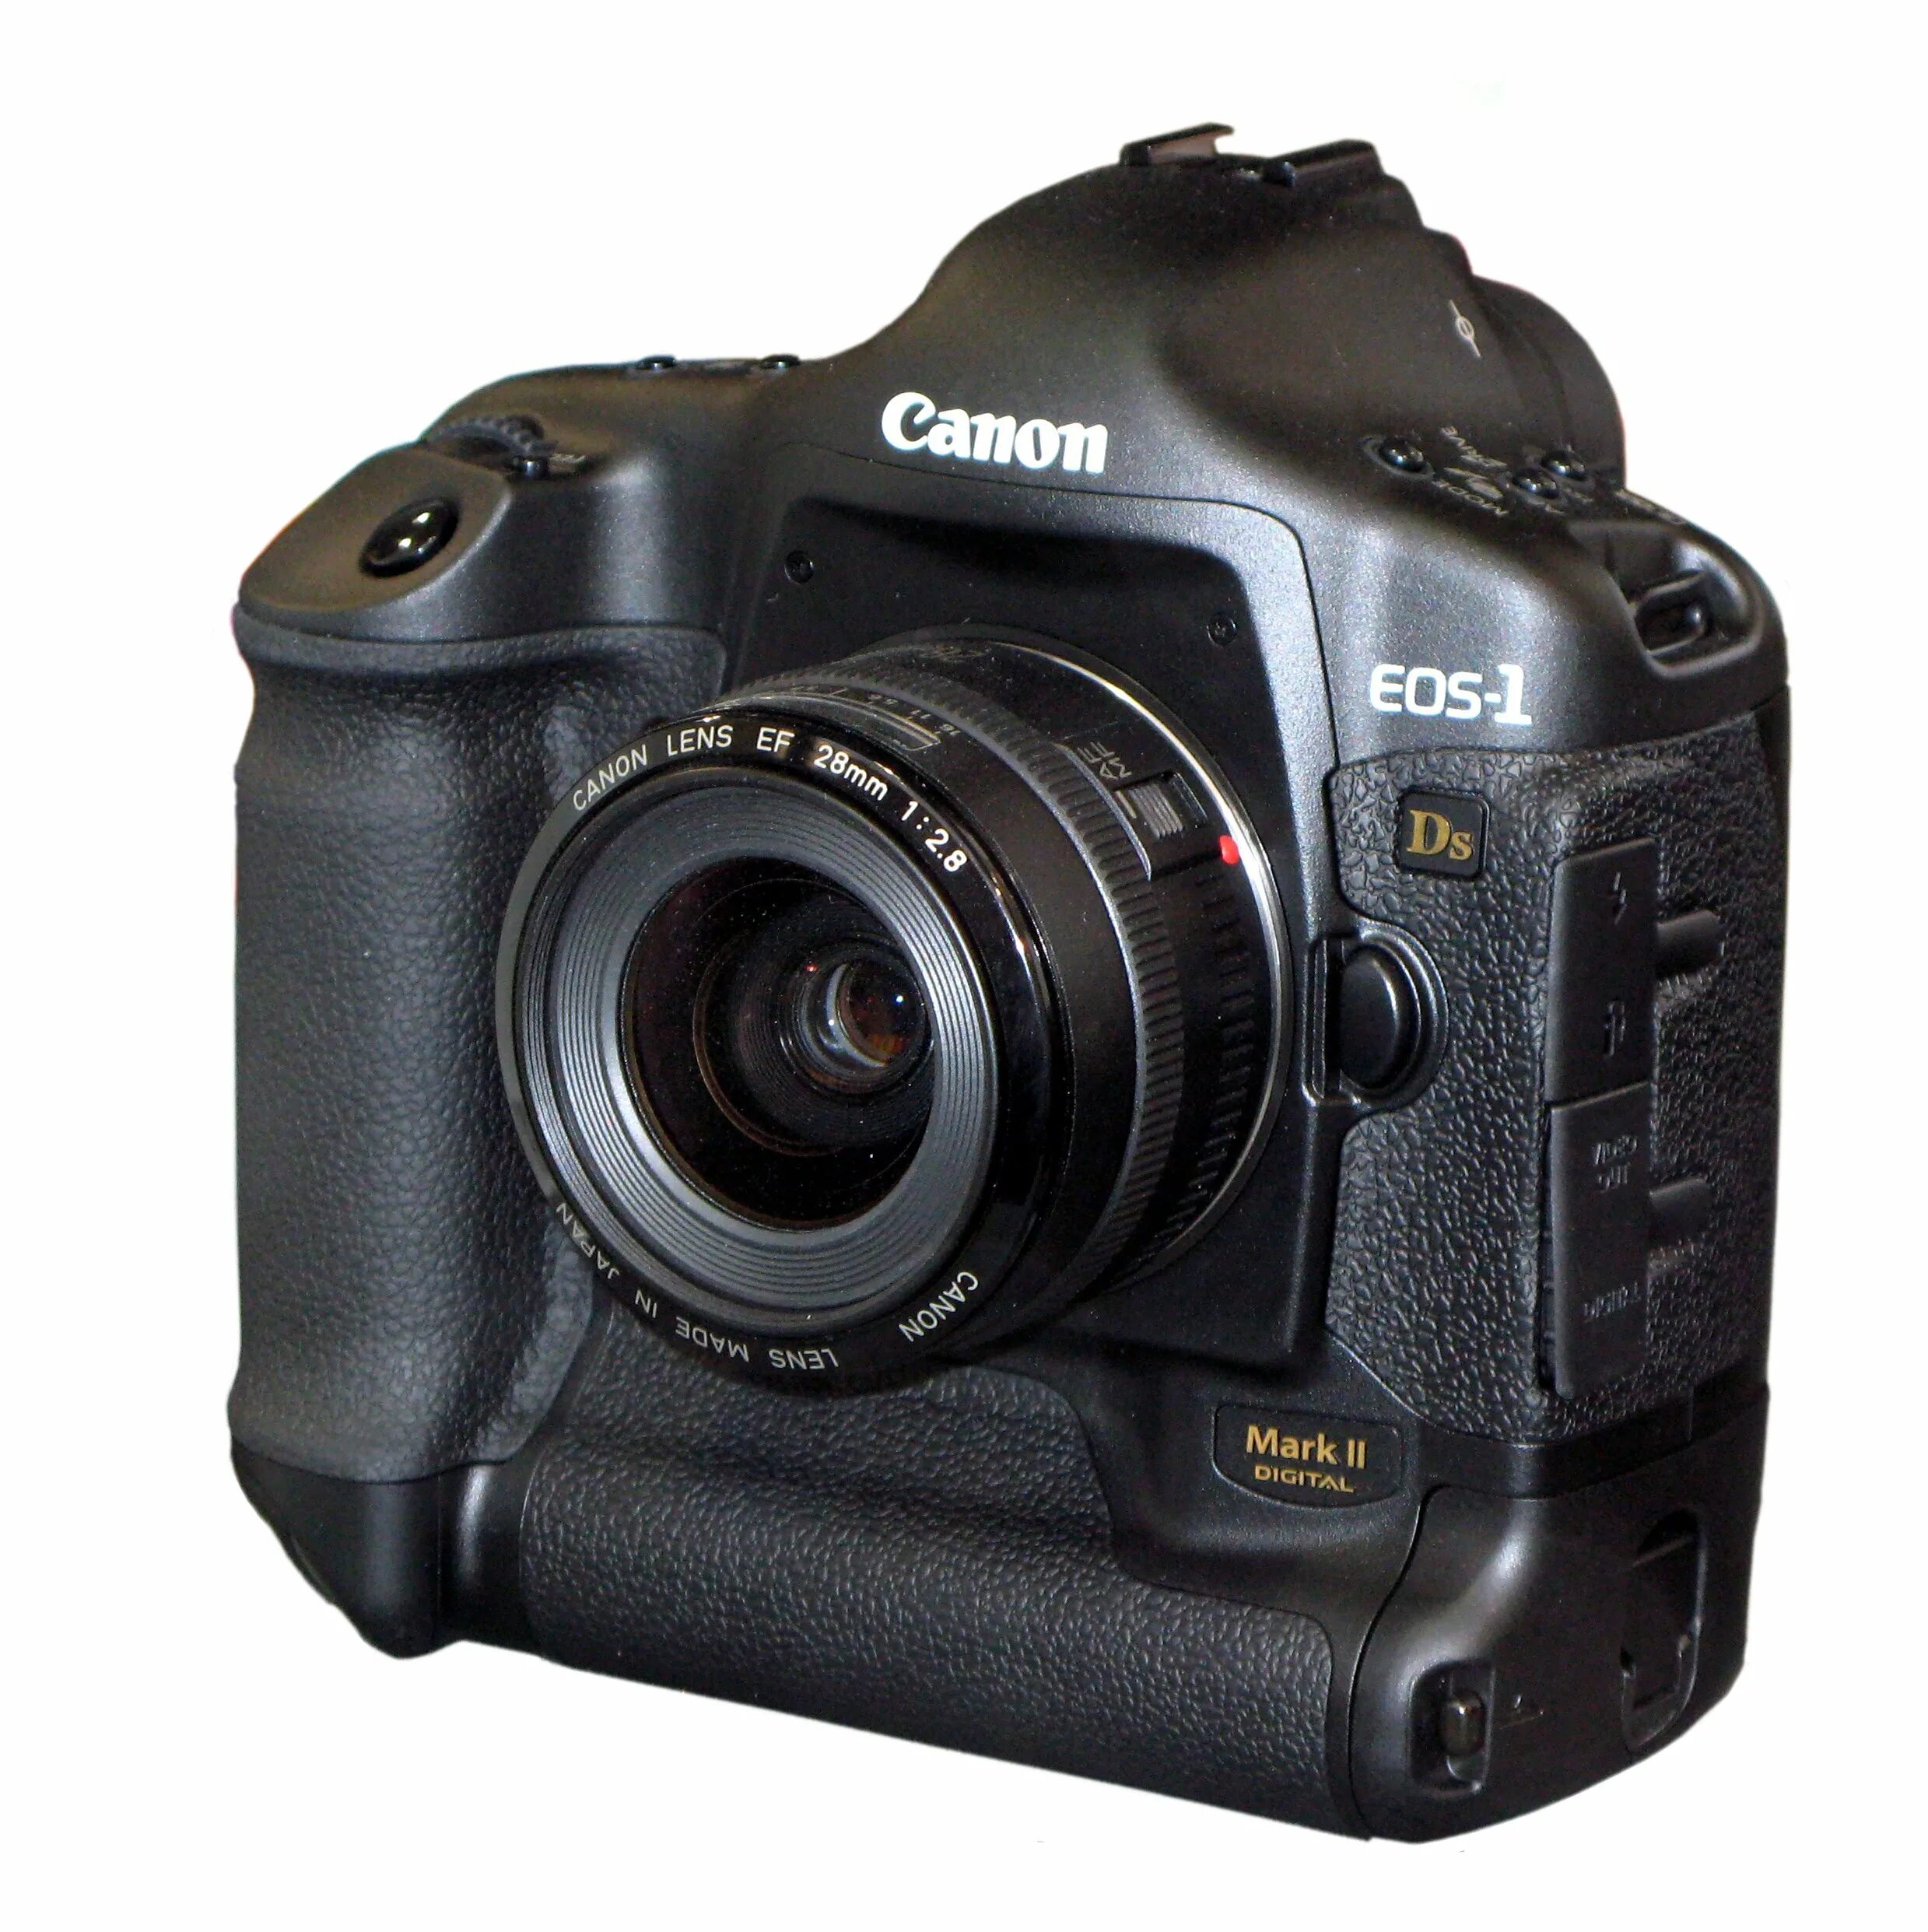 Canon 1ds Mark II. Canon EOS-1ds Mark II. Canon 1d Mark III. Canon EOS-1. 1ds mark